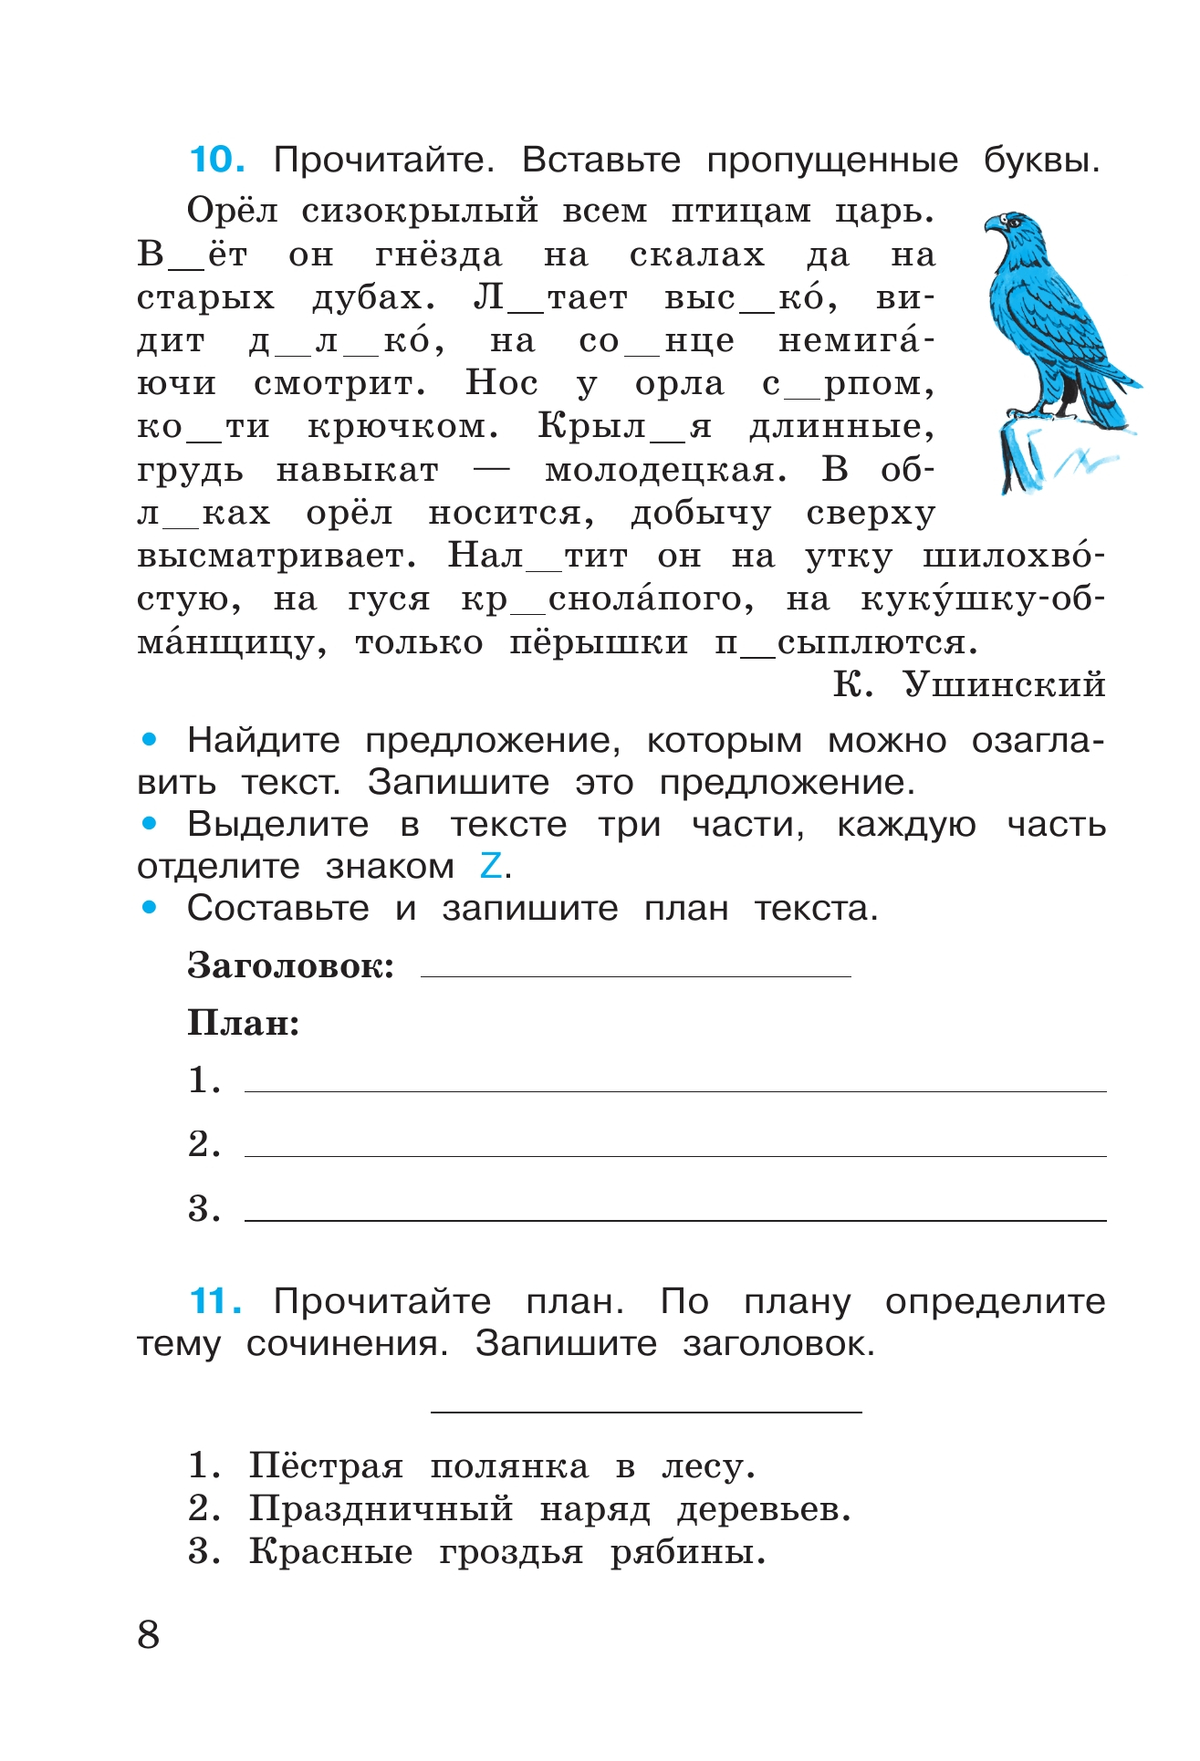 Русский язык. Рабочая тетрадь. 4 класс. В 2 частях. Часть 1 4